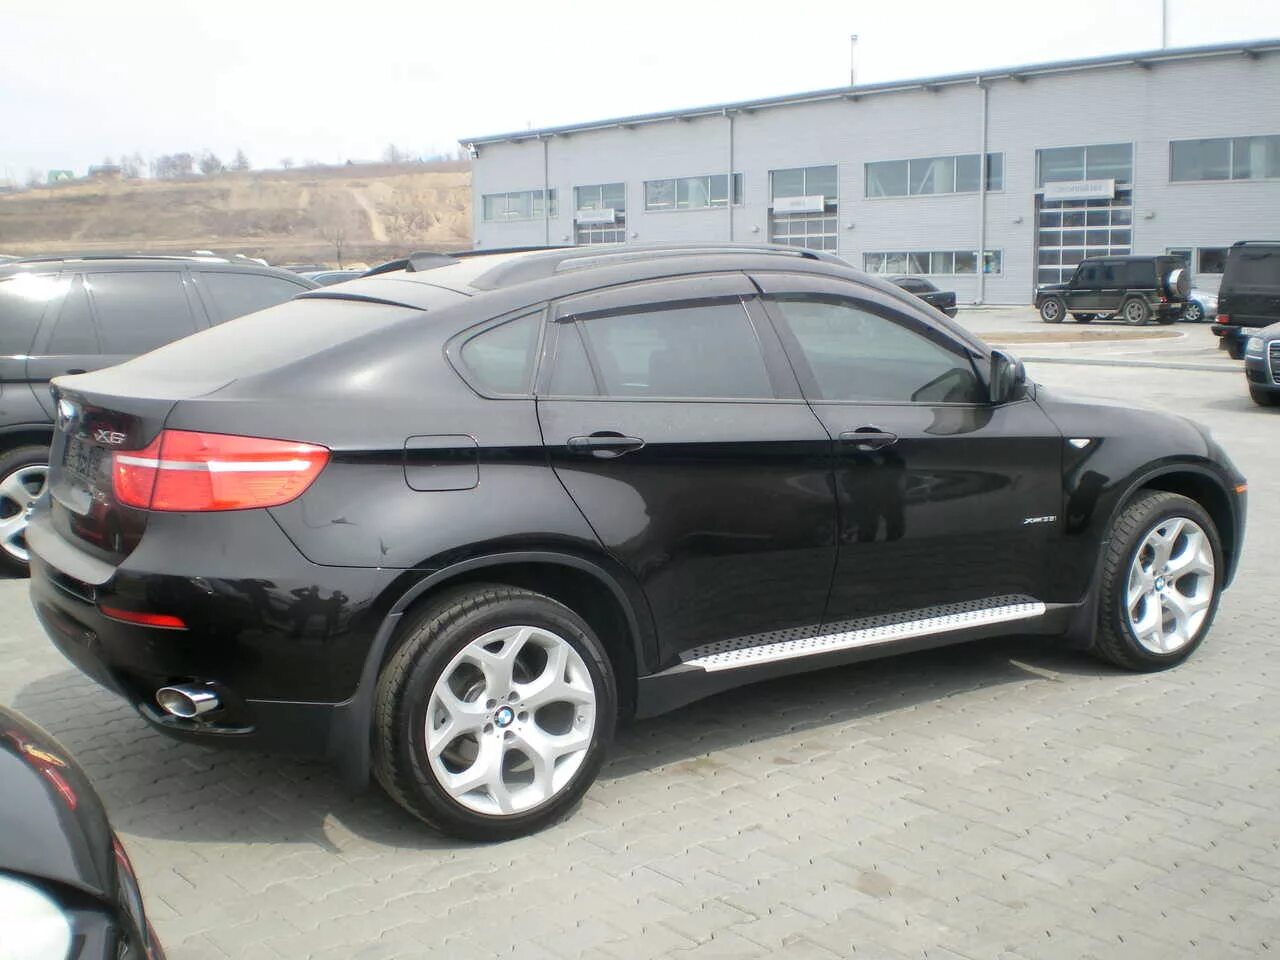 BMW x6 2009 черная. БМВ x6 2005. БМВ Икс 6 черная. БМВ Икс 6 БМВ Икс 6. Купить х6 с пробегом дизель